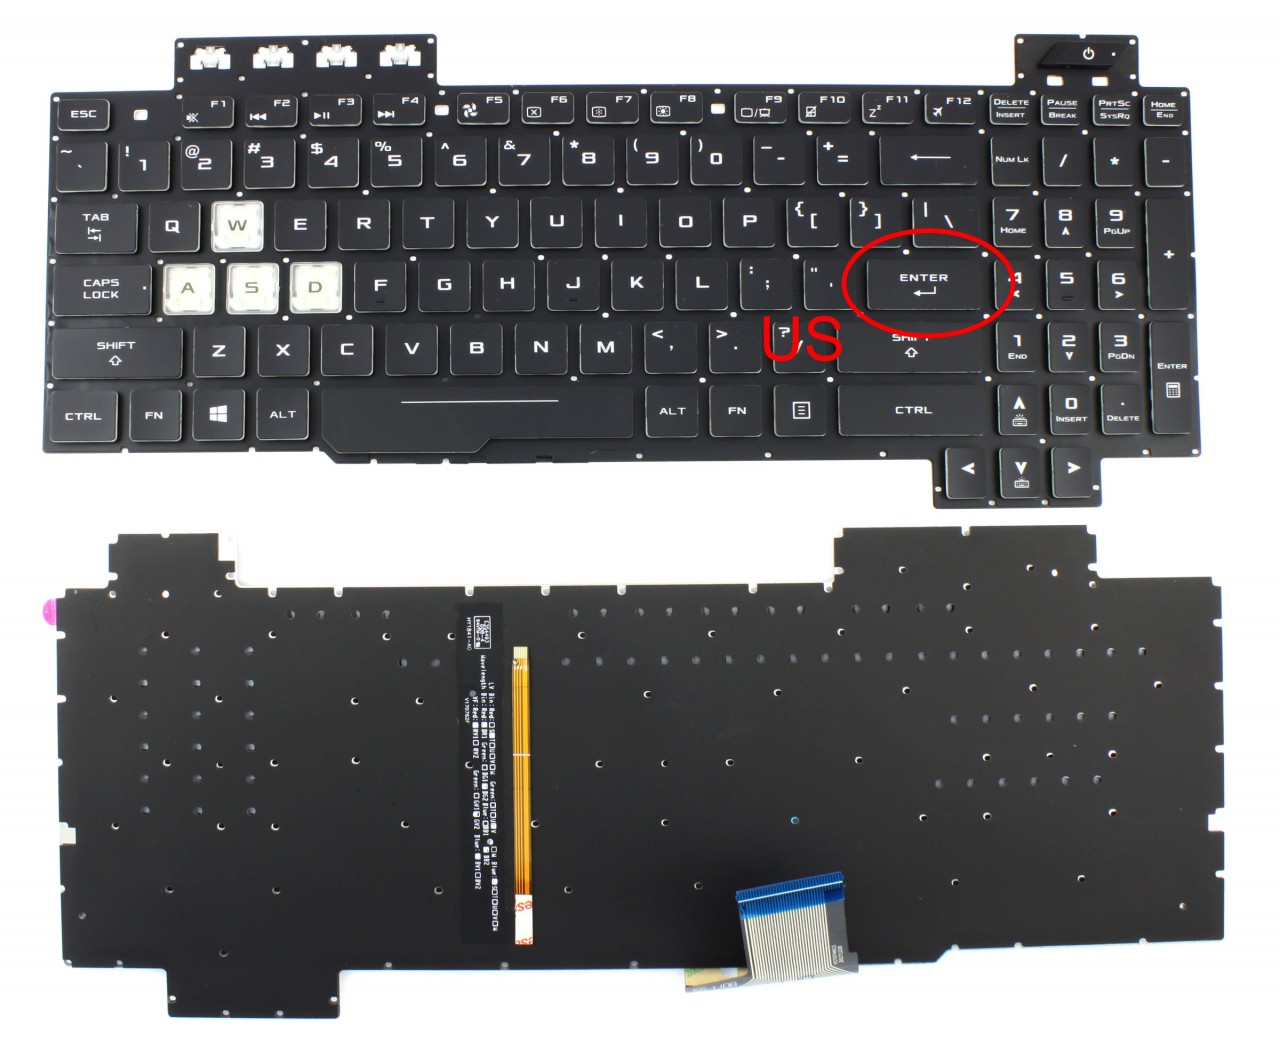 Tastatura Asus TUF Gaming FX705GE iluminata RGB layout US fara rama enter mic